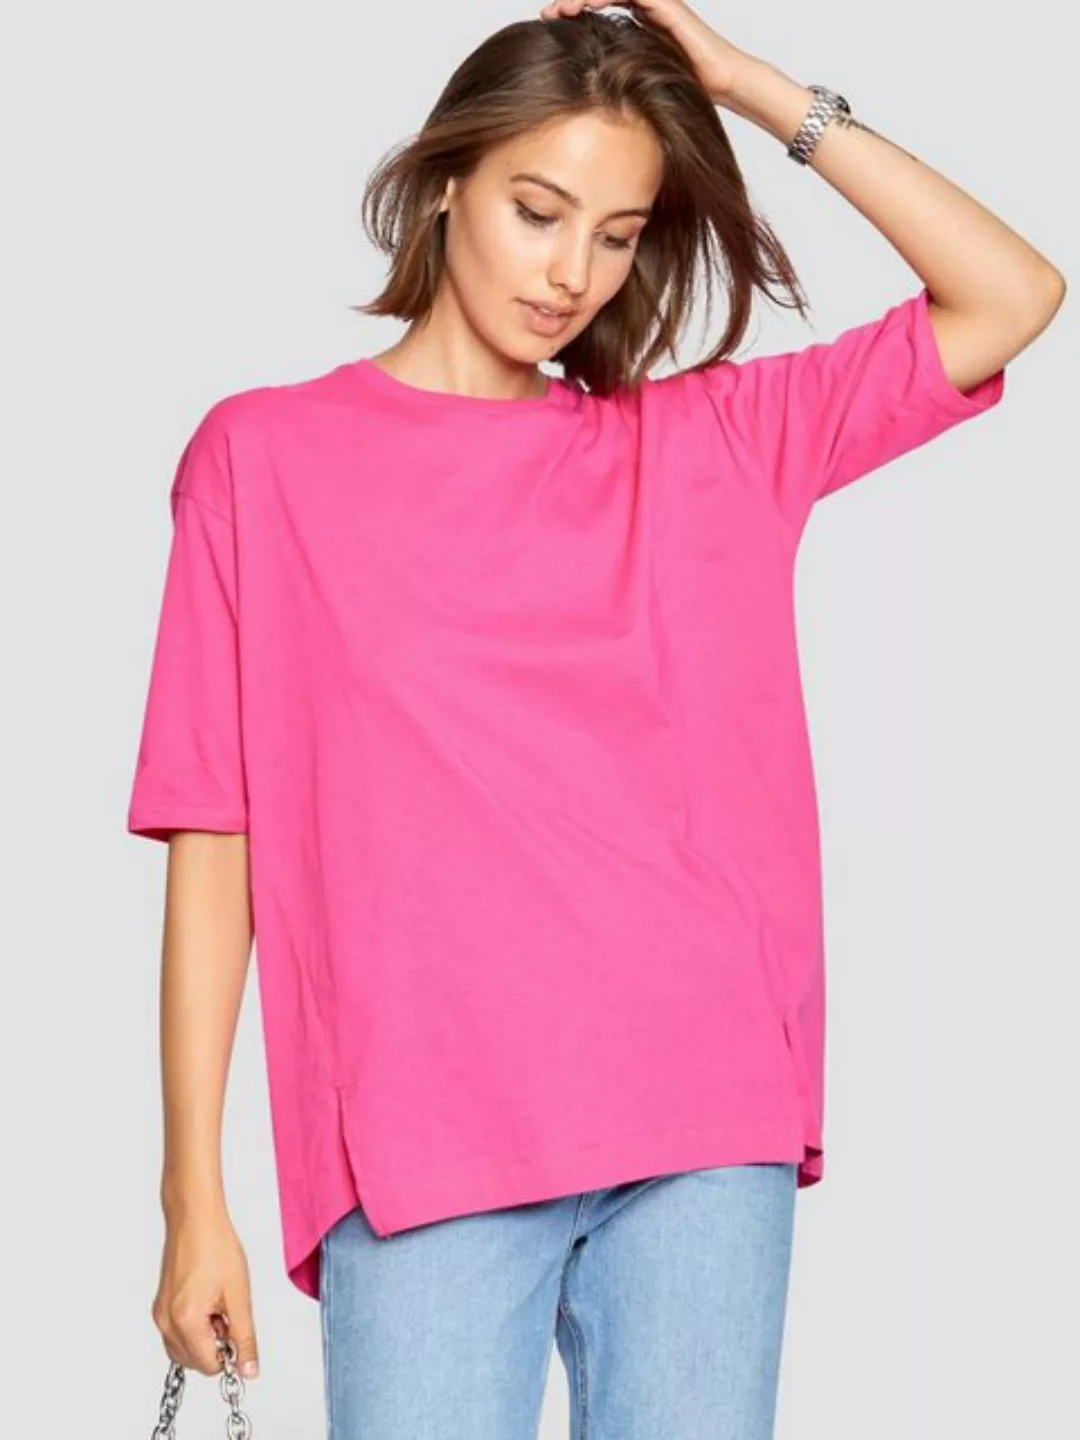 Freshlions T-Shirt Shirt mit Schlitzen pink M Ohne günstig online kaufen